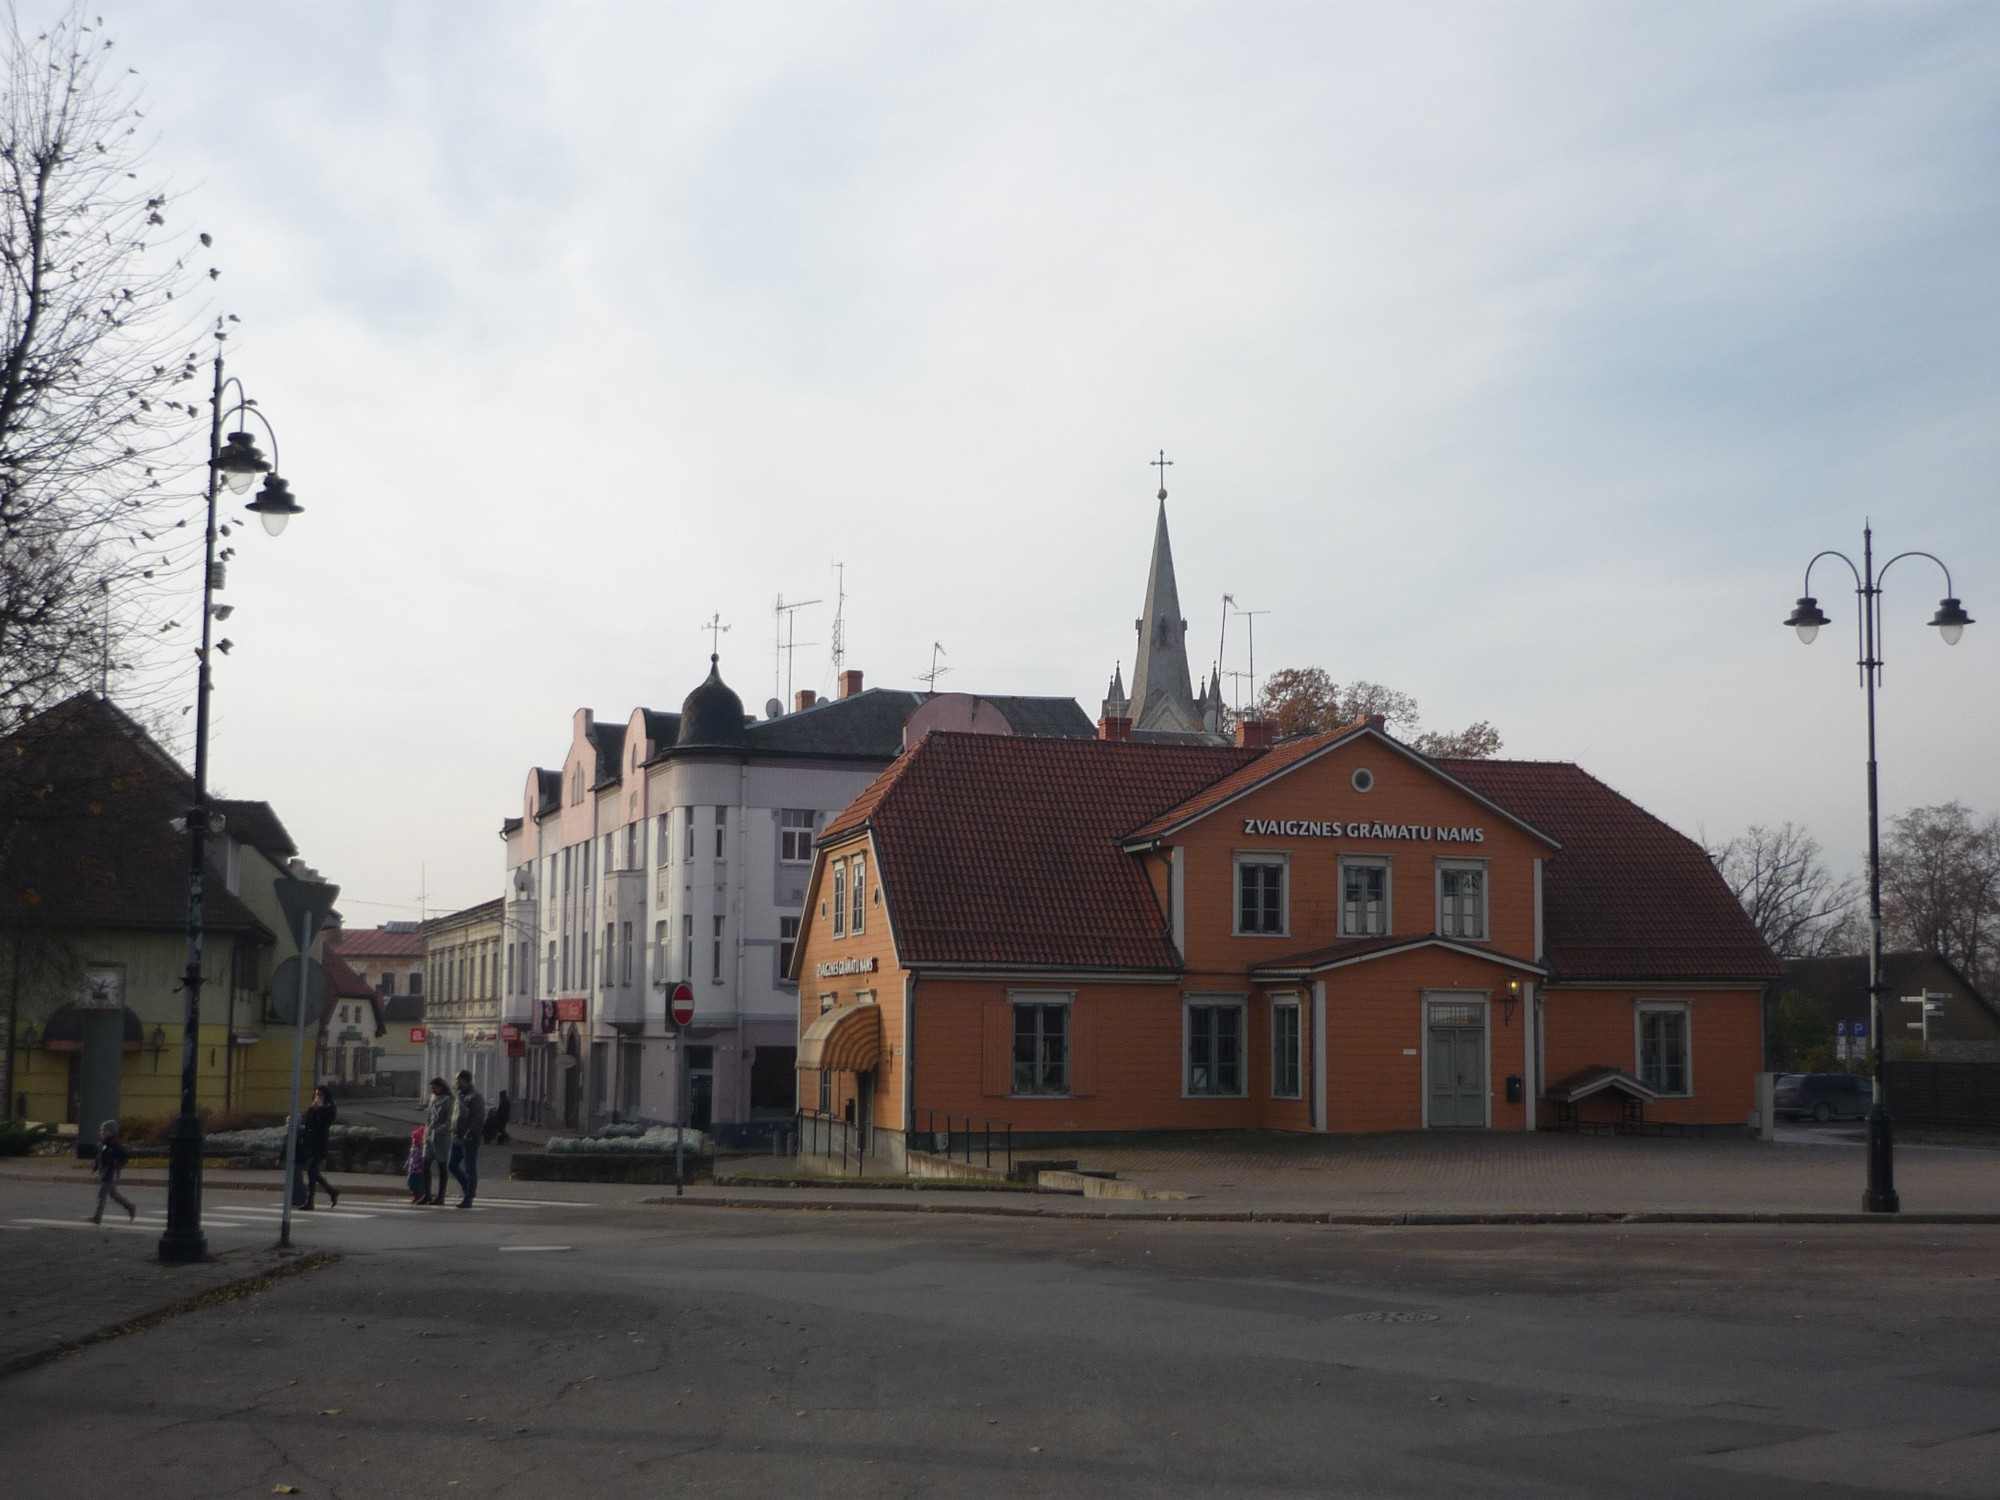 Cesis, Latvia